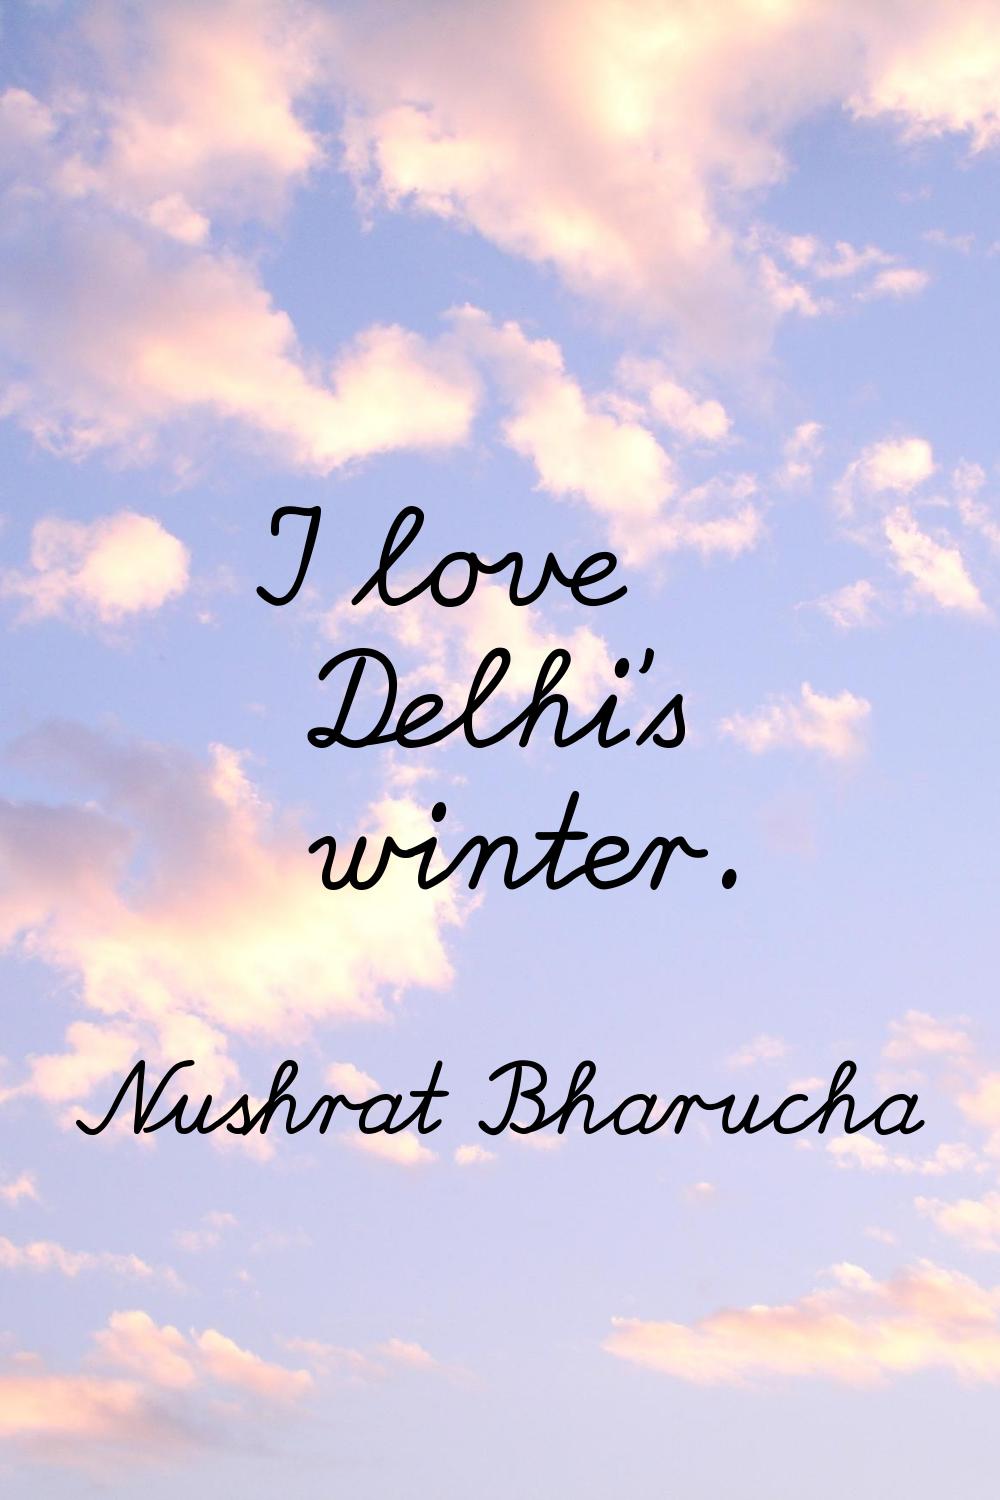 I love Delhi's winter.